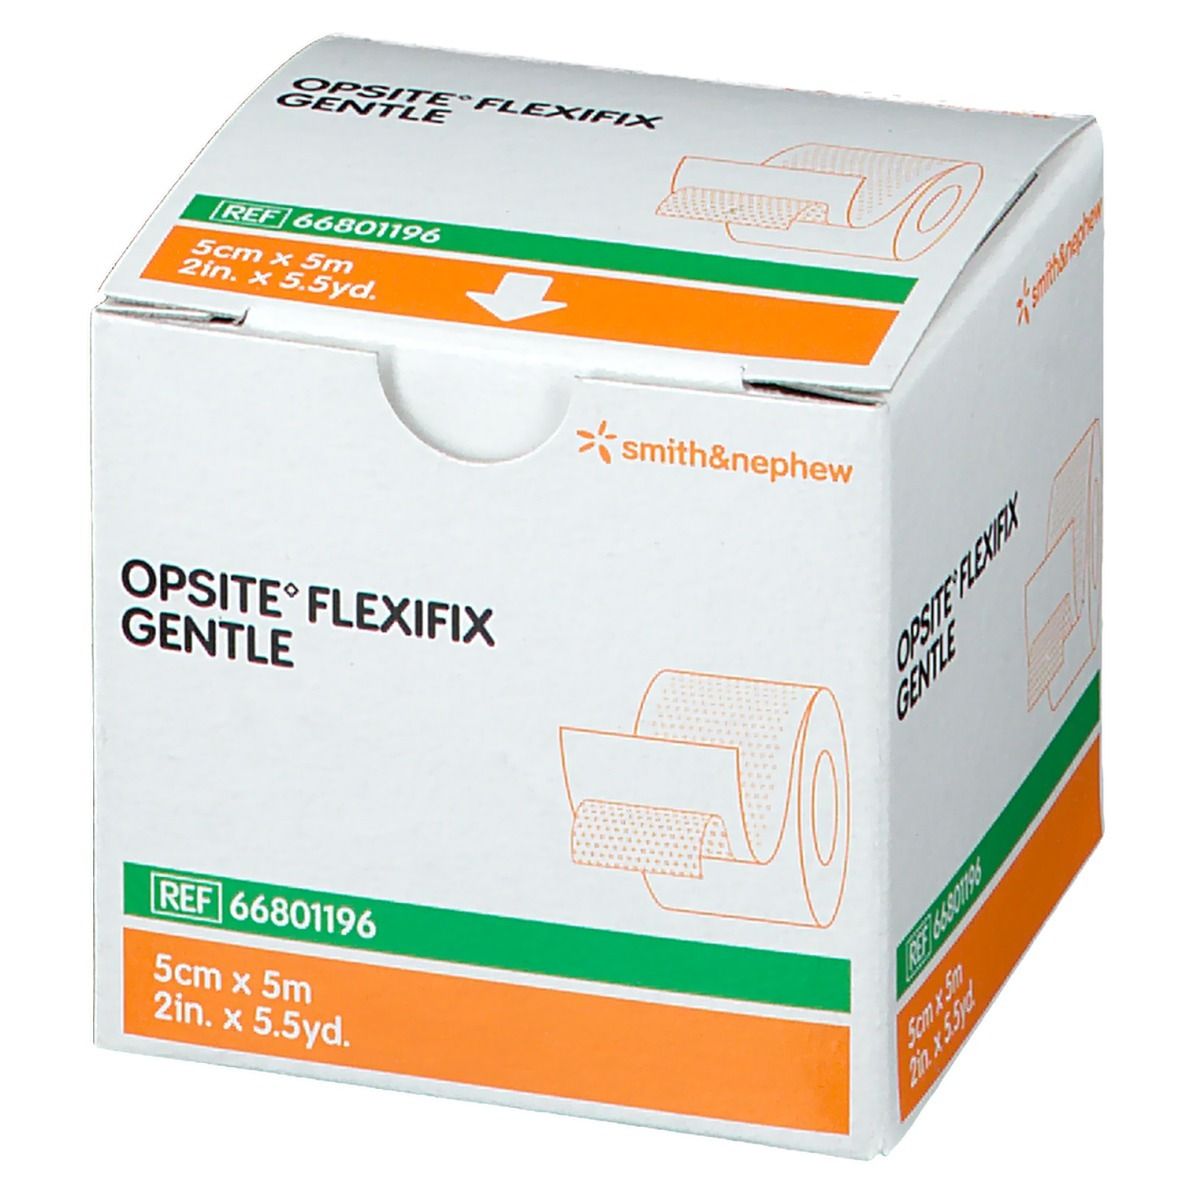 Flexifix Doux 5cmx5m 66801196